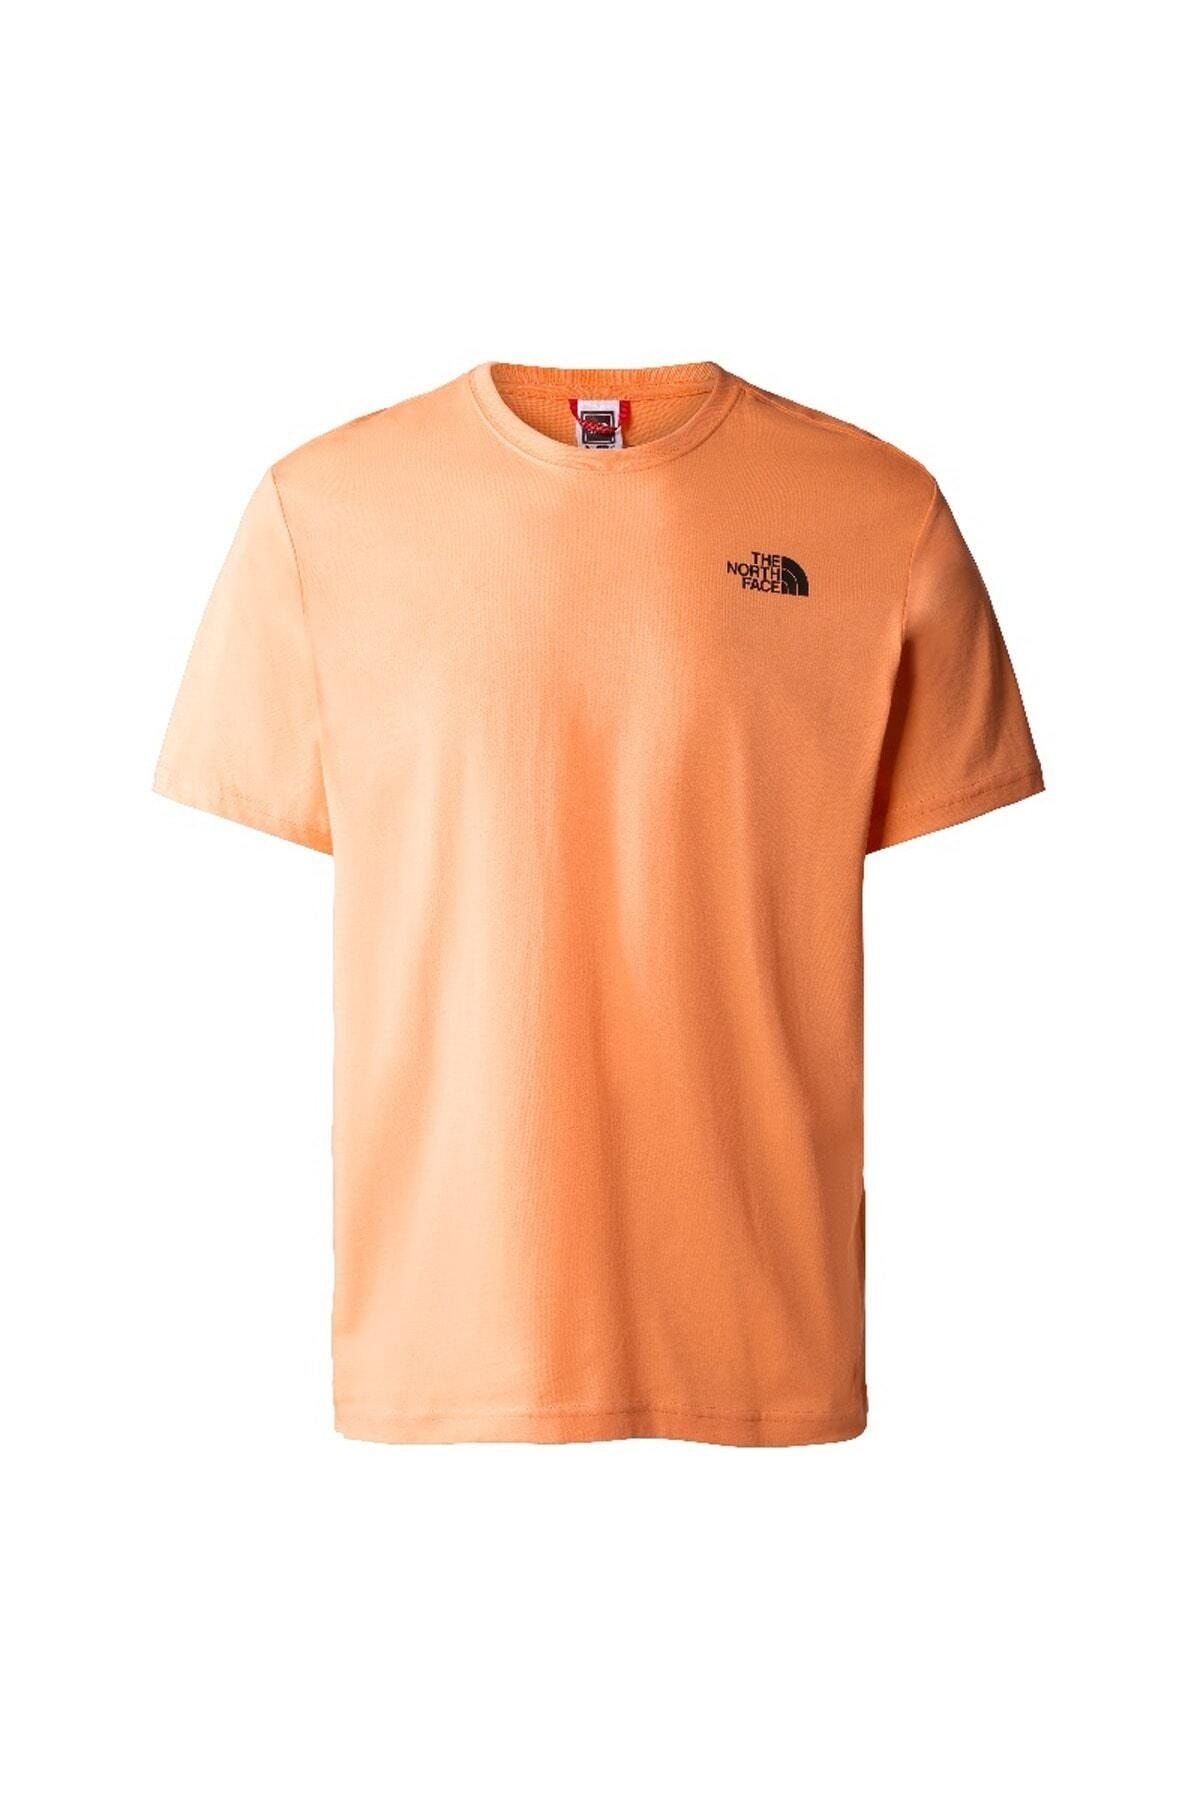 The North Face S/s Redbox Tee Erkek T-shirt - Nf0a2tx2